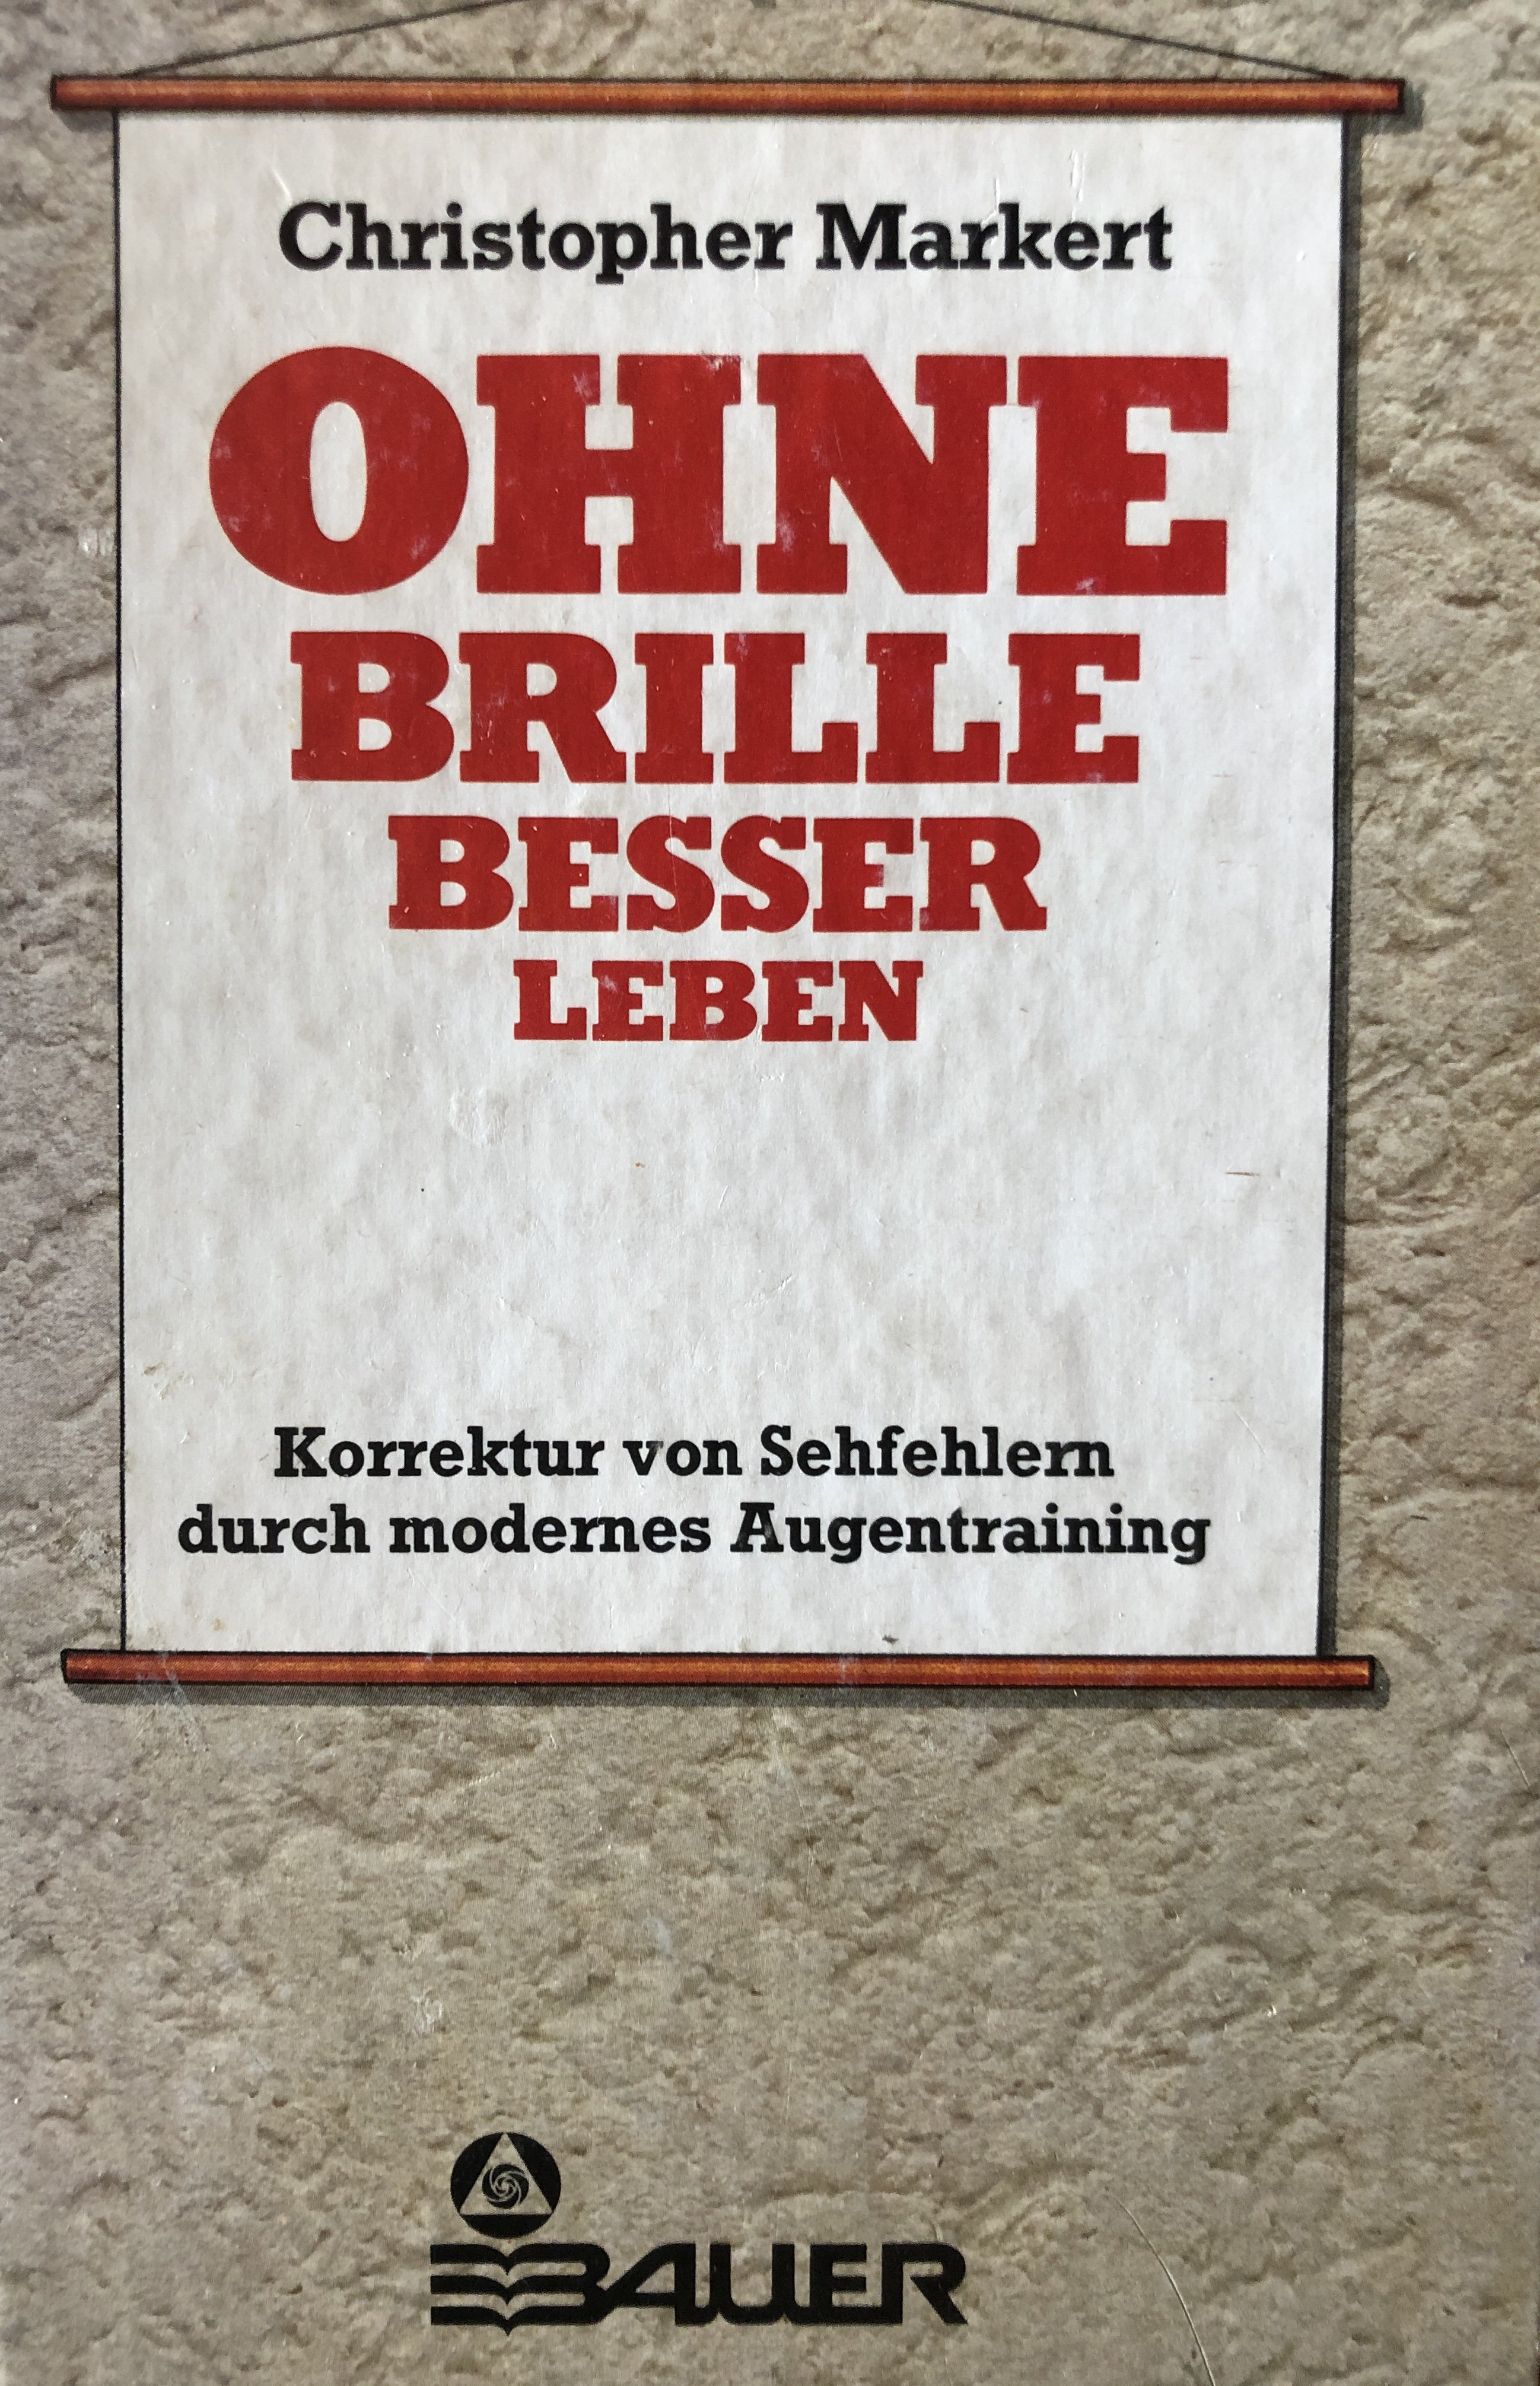 Ohne Brille besser leben (Krankenhausmuseum Bielefeld e.V. CC BY-NC-SA)